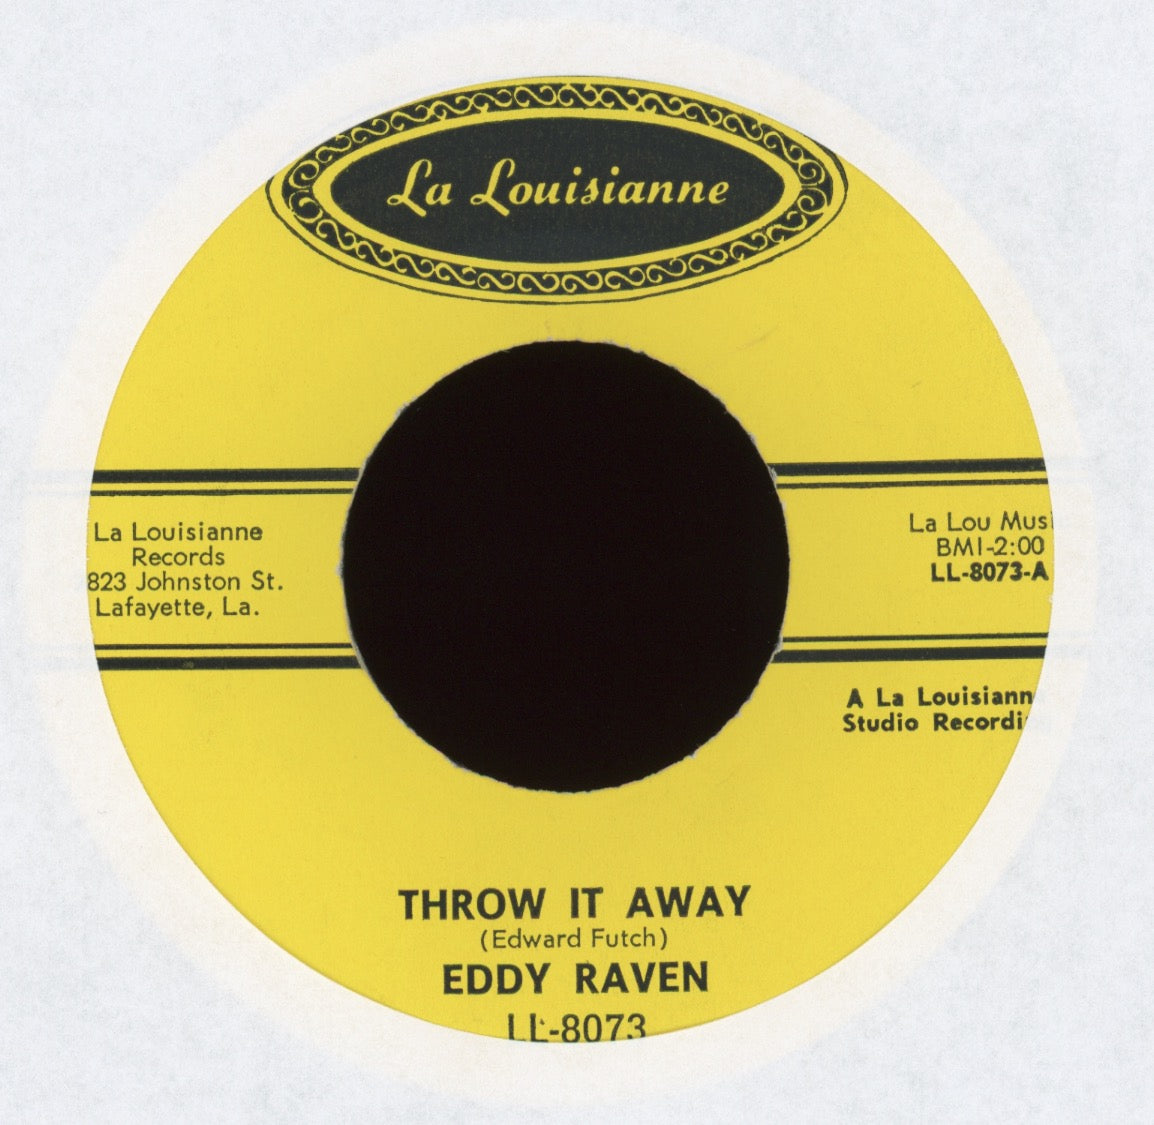 Eddy Raven - Throw It Away on La Louisianne